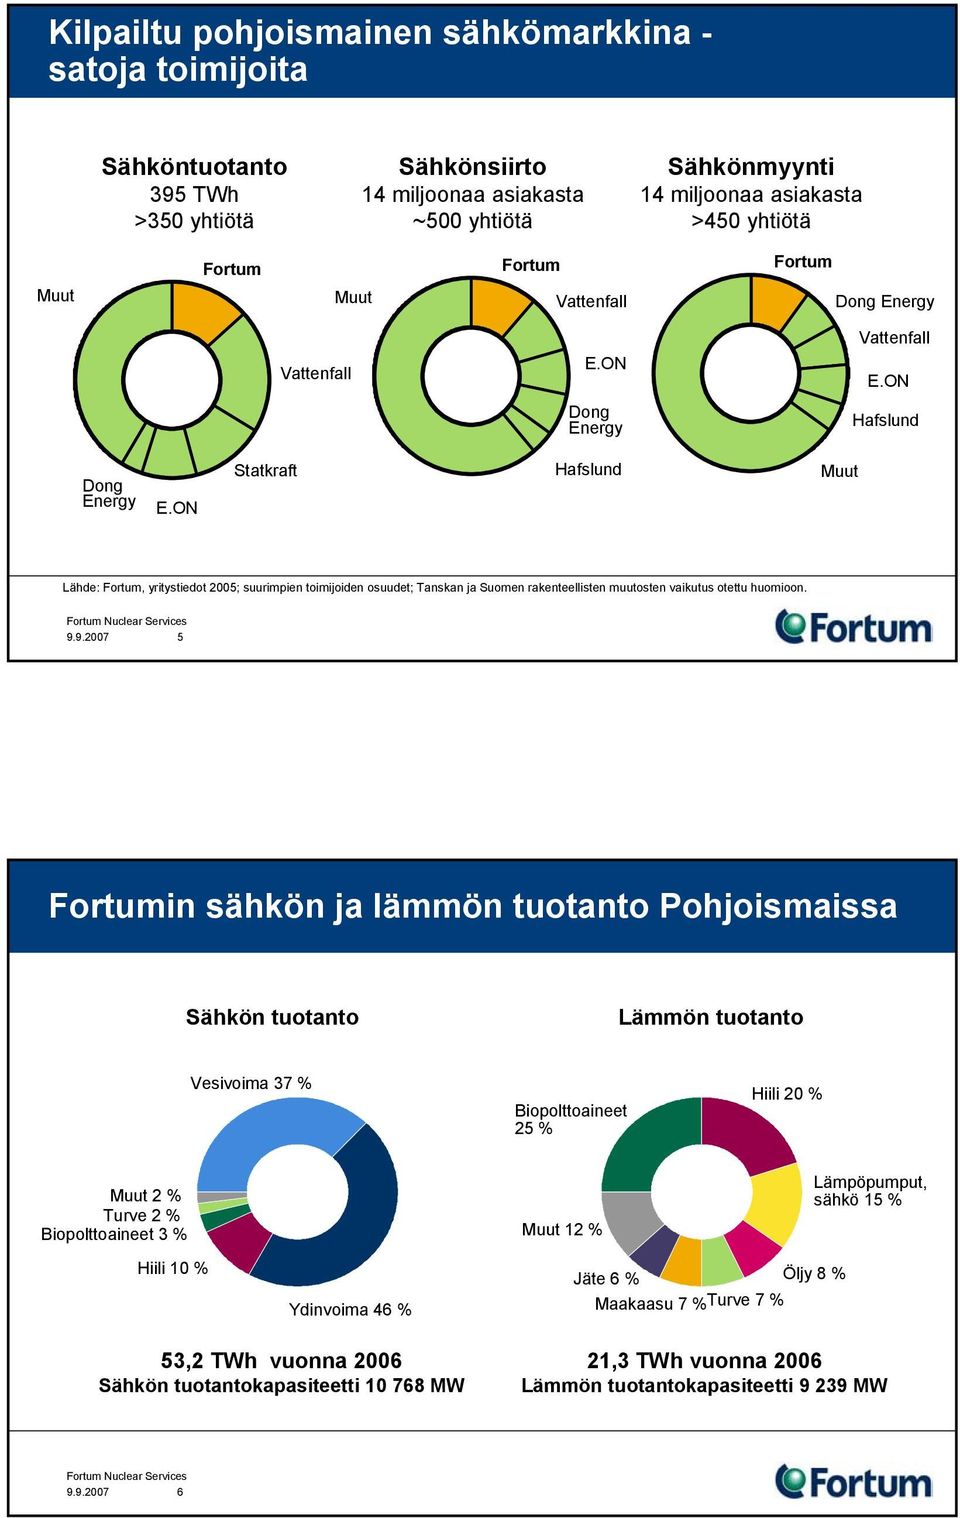 ON Statkraft Hafslund Muut Lähde: Fortum, yritystiedot 2005; suurimpien toimijoiden osuudet; Tanskan ja Suomen rakenteellisten muutosten vaikutus otettu huomioon. 9.